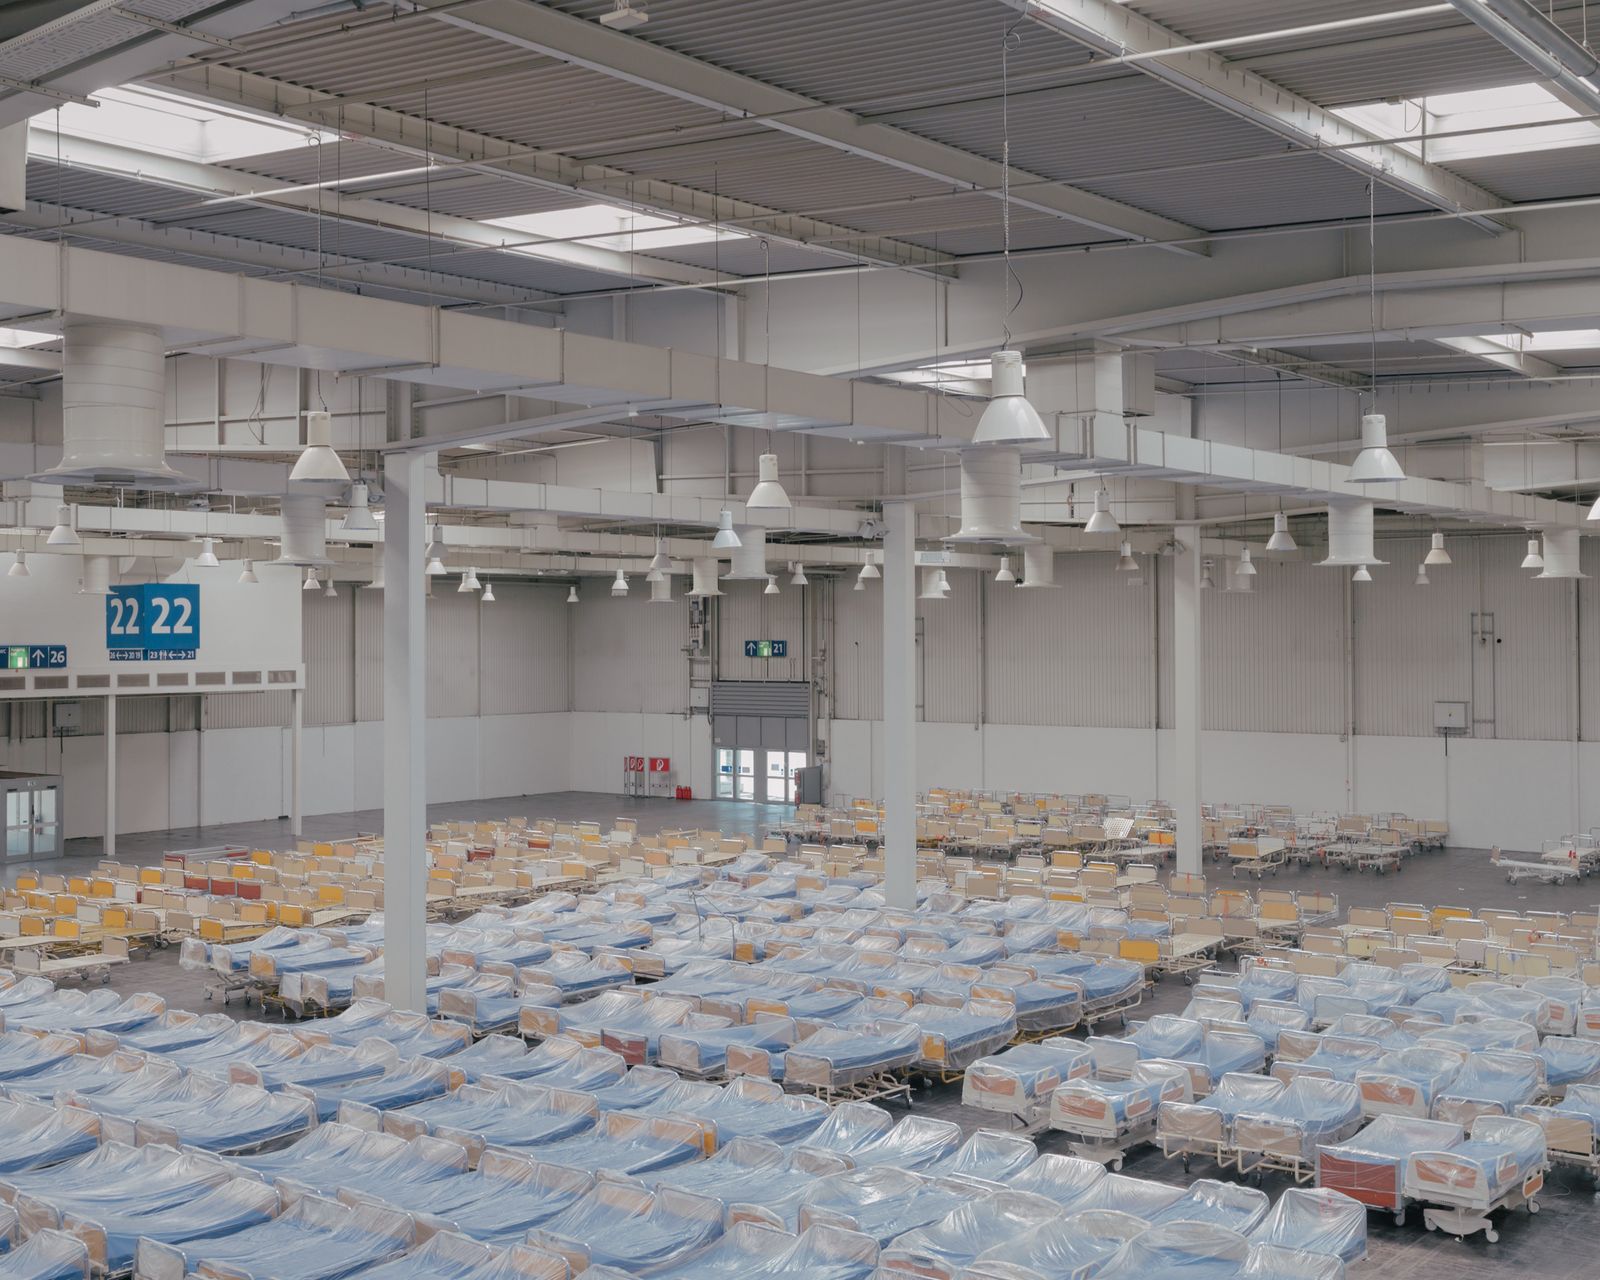 © Ingmar Björn Nolting - Stored beds, makeshift hospital, Hanover, April 4, 2020.